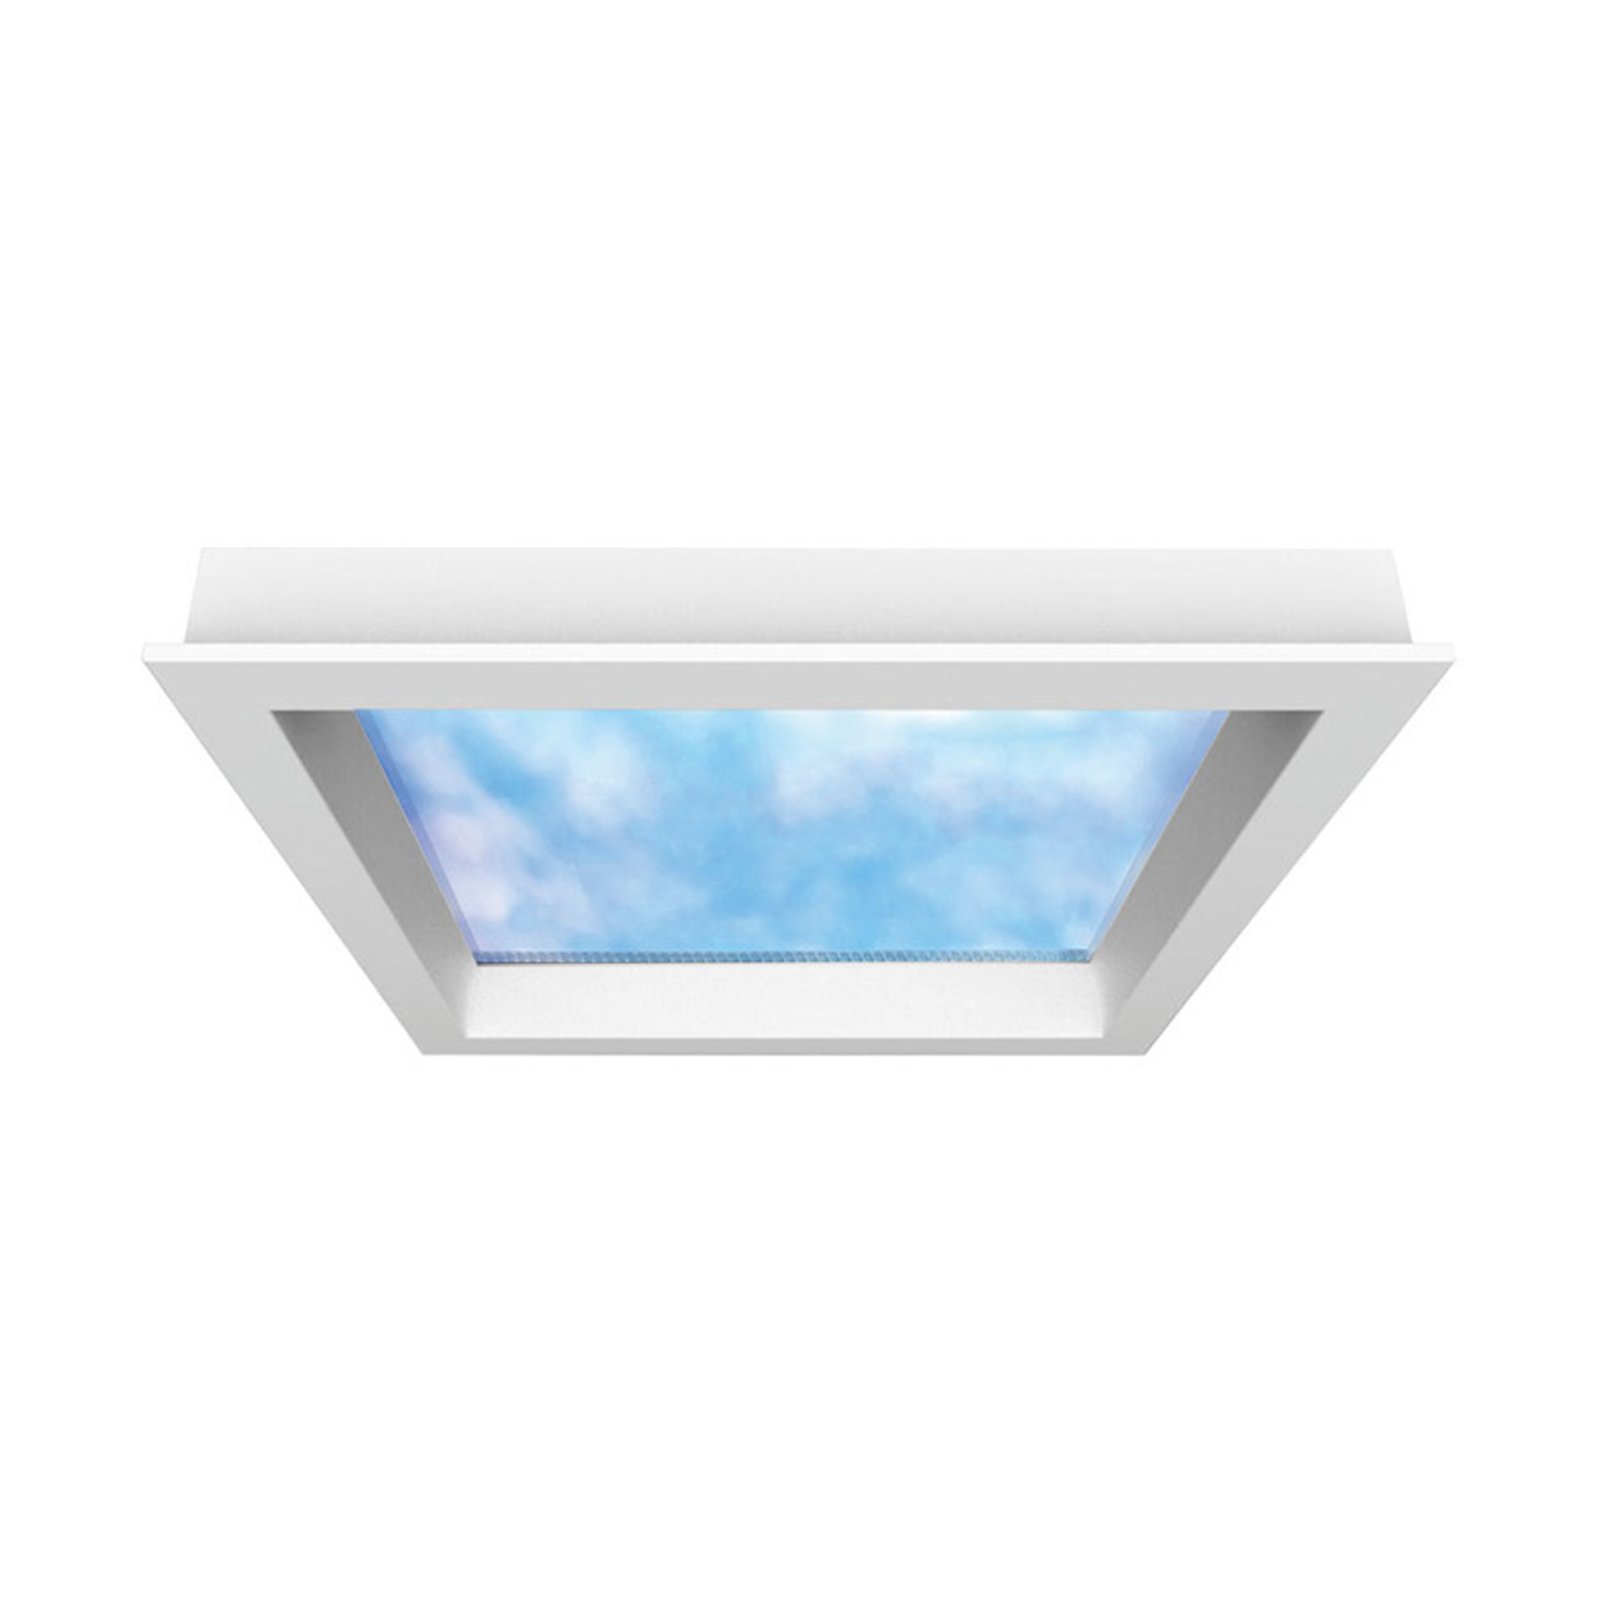 LED paneel Sky Window 60x60cm met inbouwframe